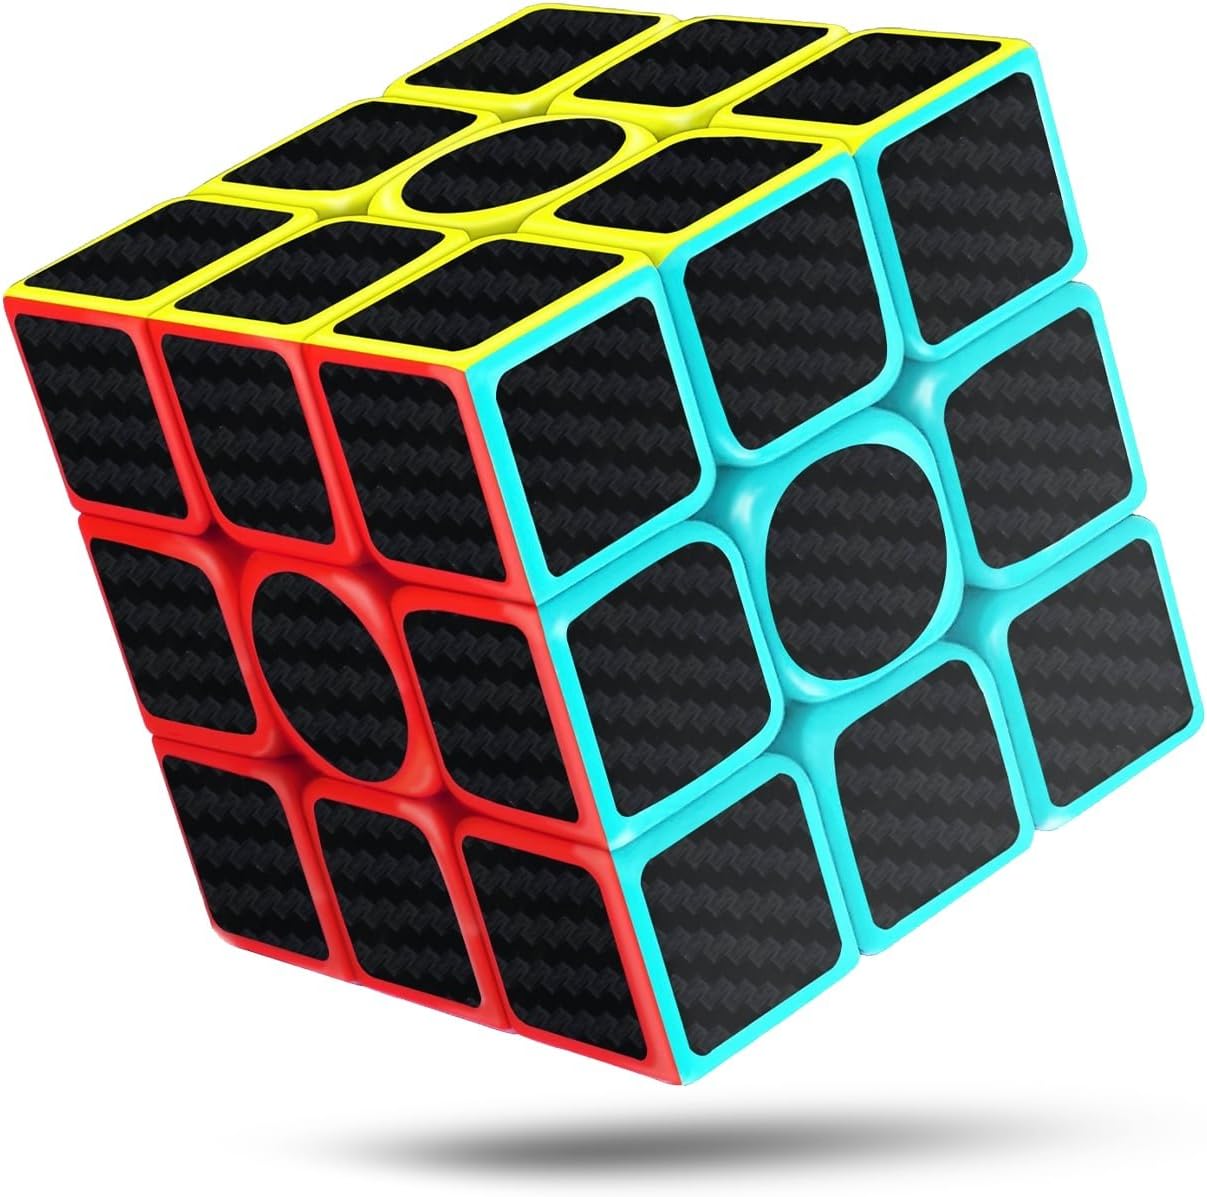 Rubik Cube Speed Magic Puzzle 3x3x3 Twist Kids Gift Rubix Brain Teaser Black New 